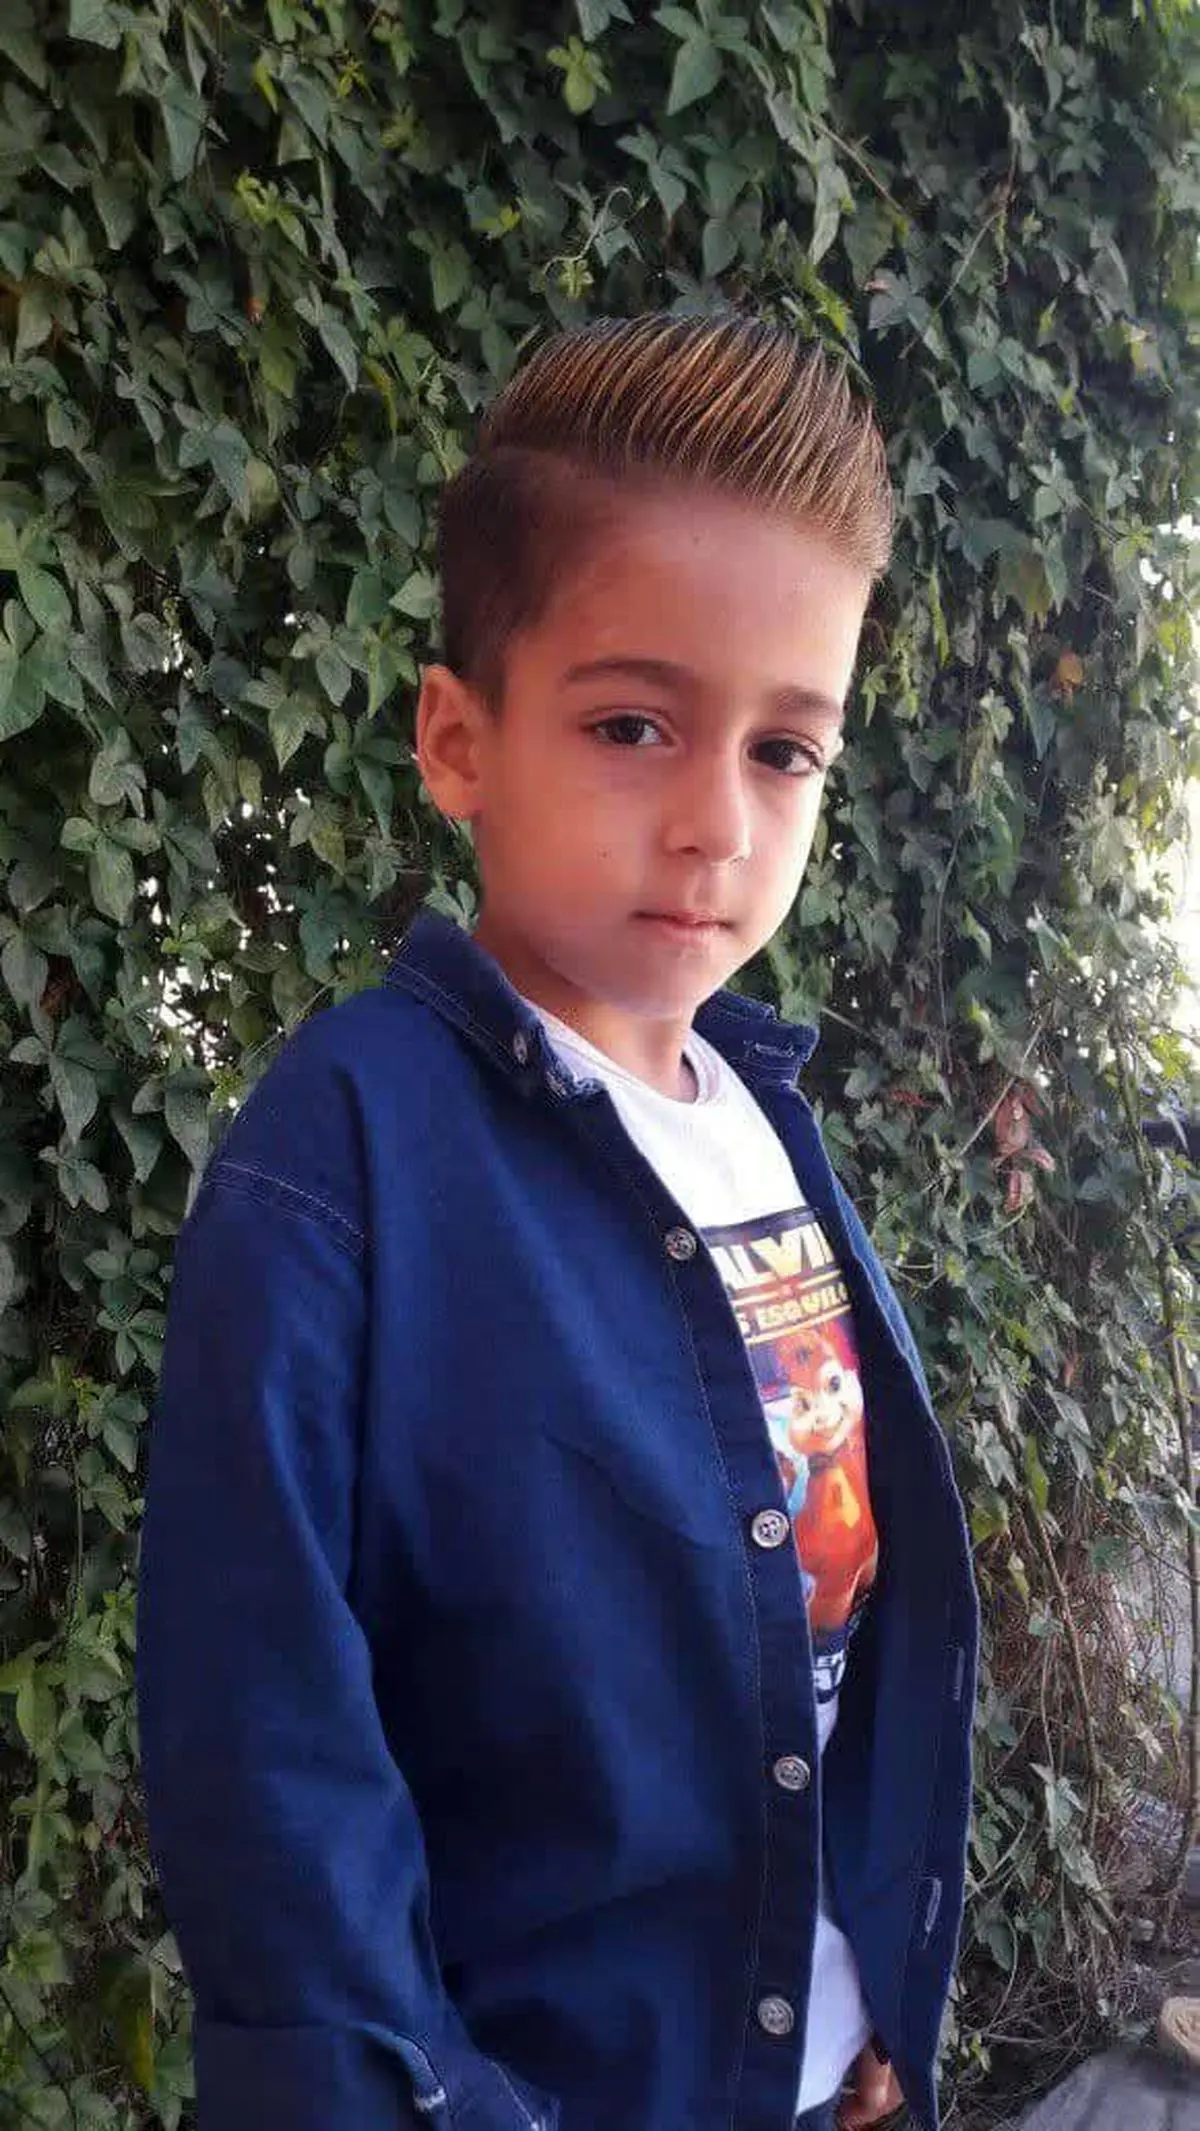 مرگ مشکوک یک کودک ۷ ساله در دزفول/ انتقال بیمار بدحال با وانت بار / کودک بین دو بیمارستان جان داد